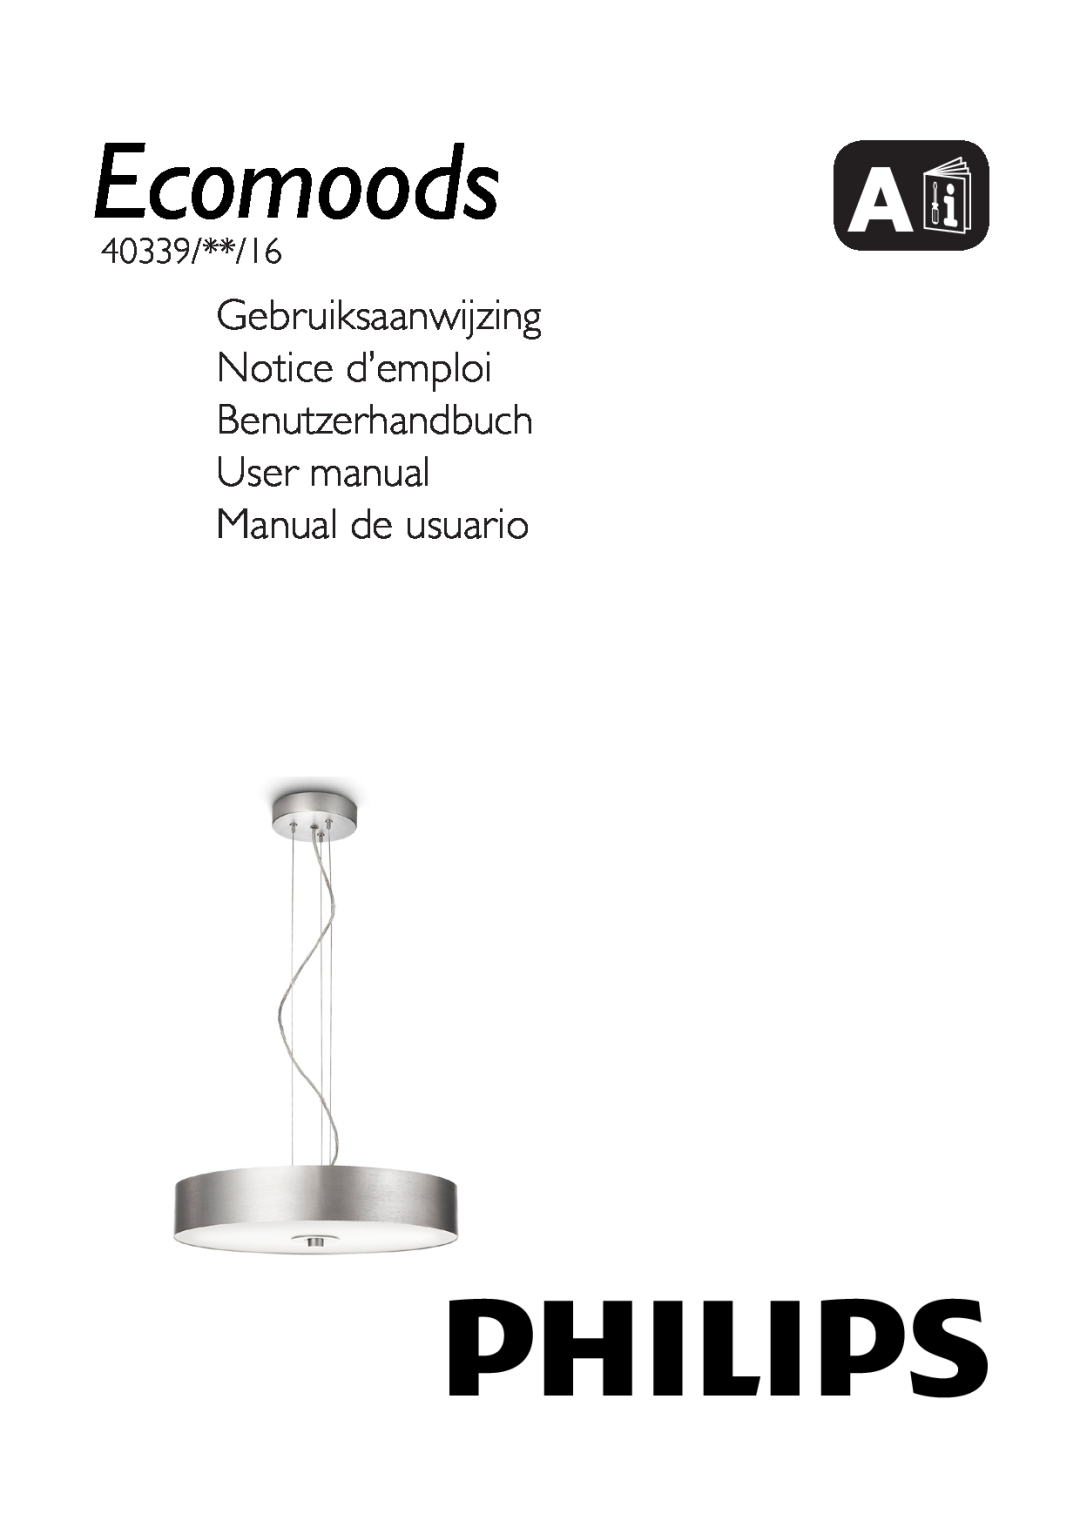 Philips 40339/**/16 user manual Gebruiksaanwijzing Notice d’emploi, Benutzerhandbuch User manual Manual de usuario 